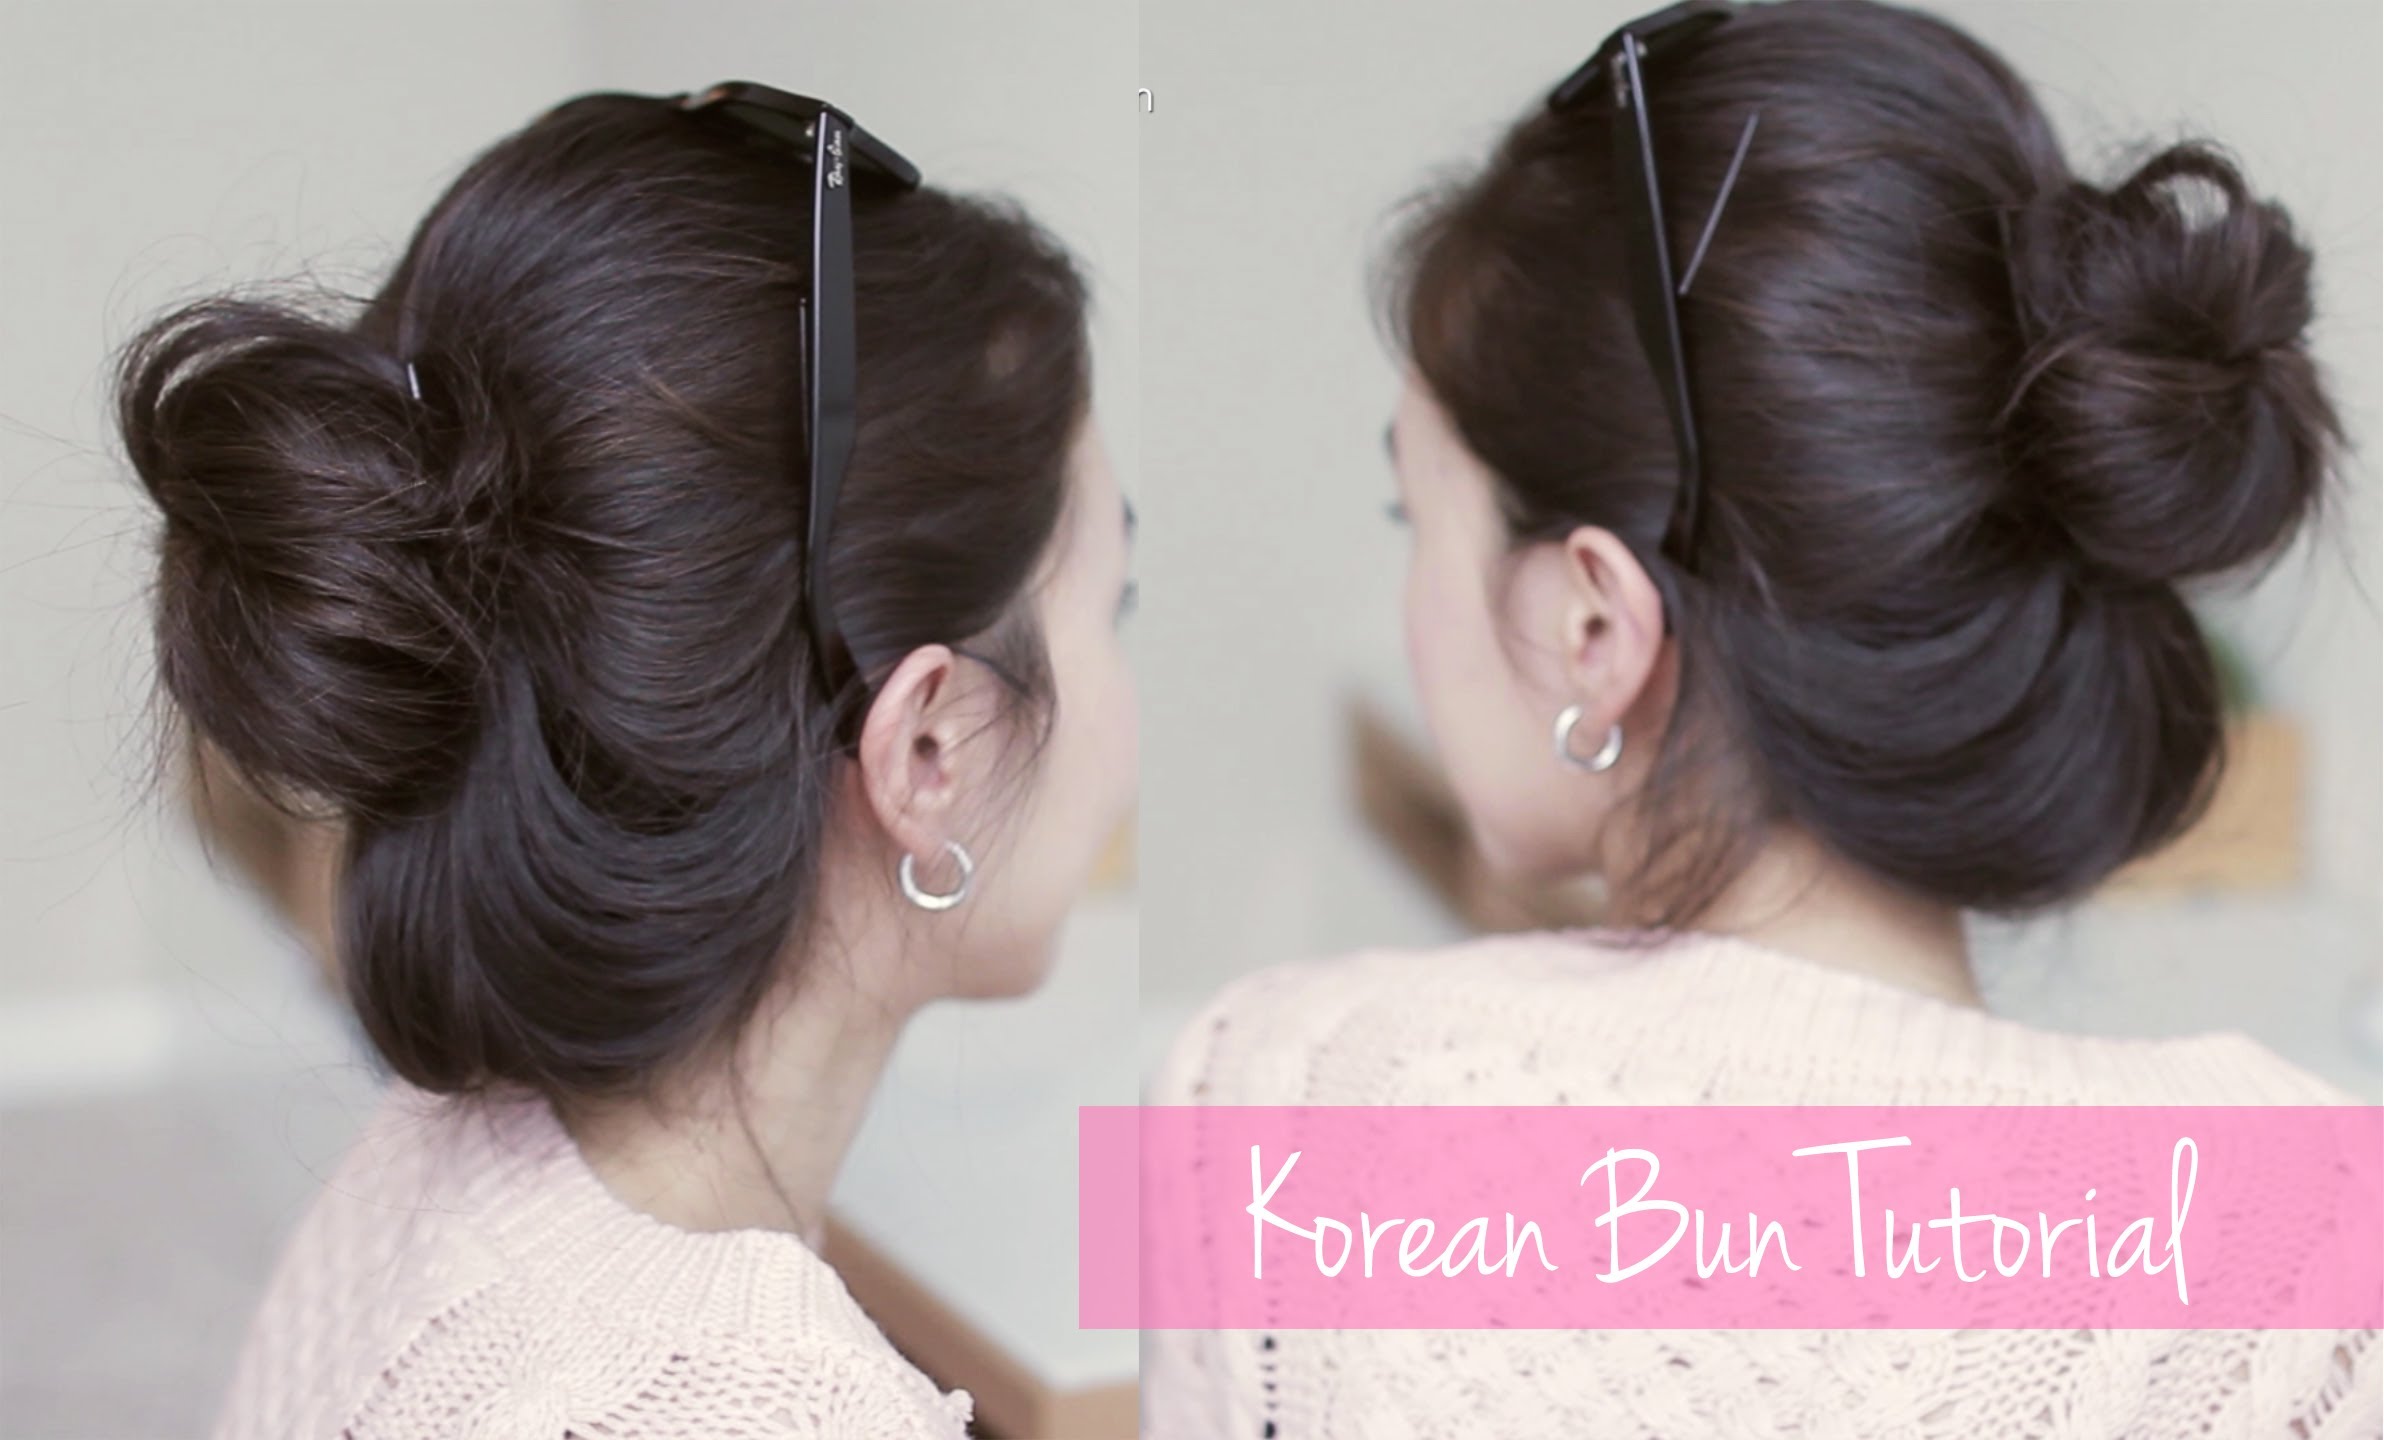 Korean natural bun tutorial